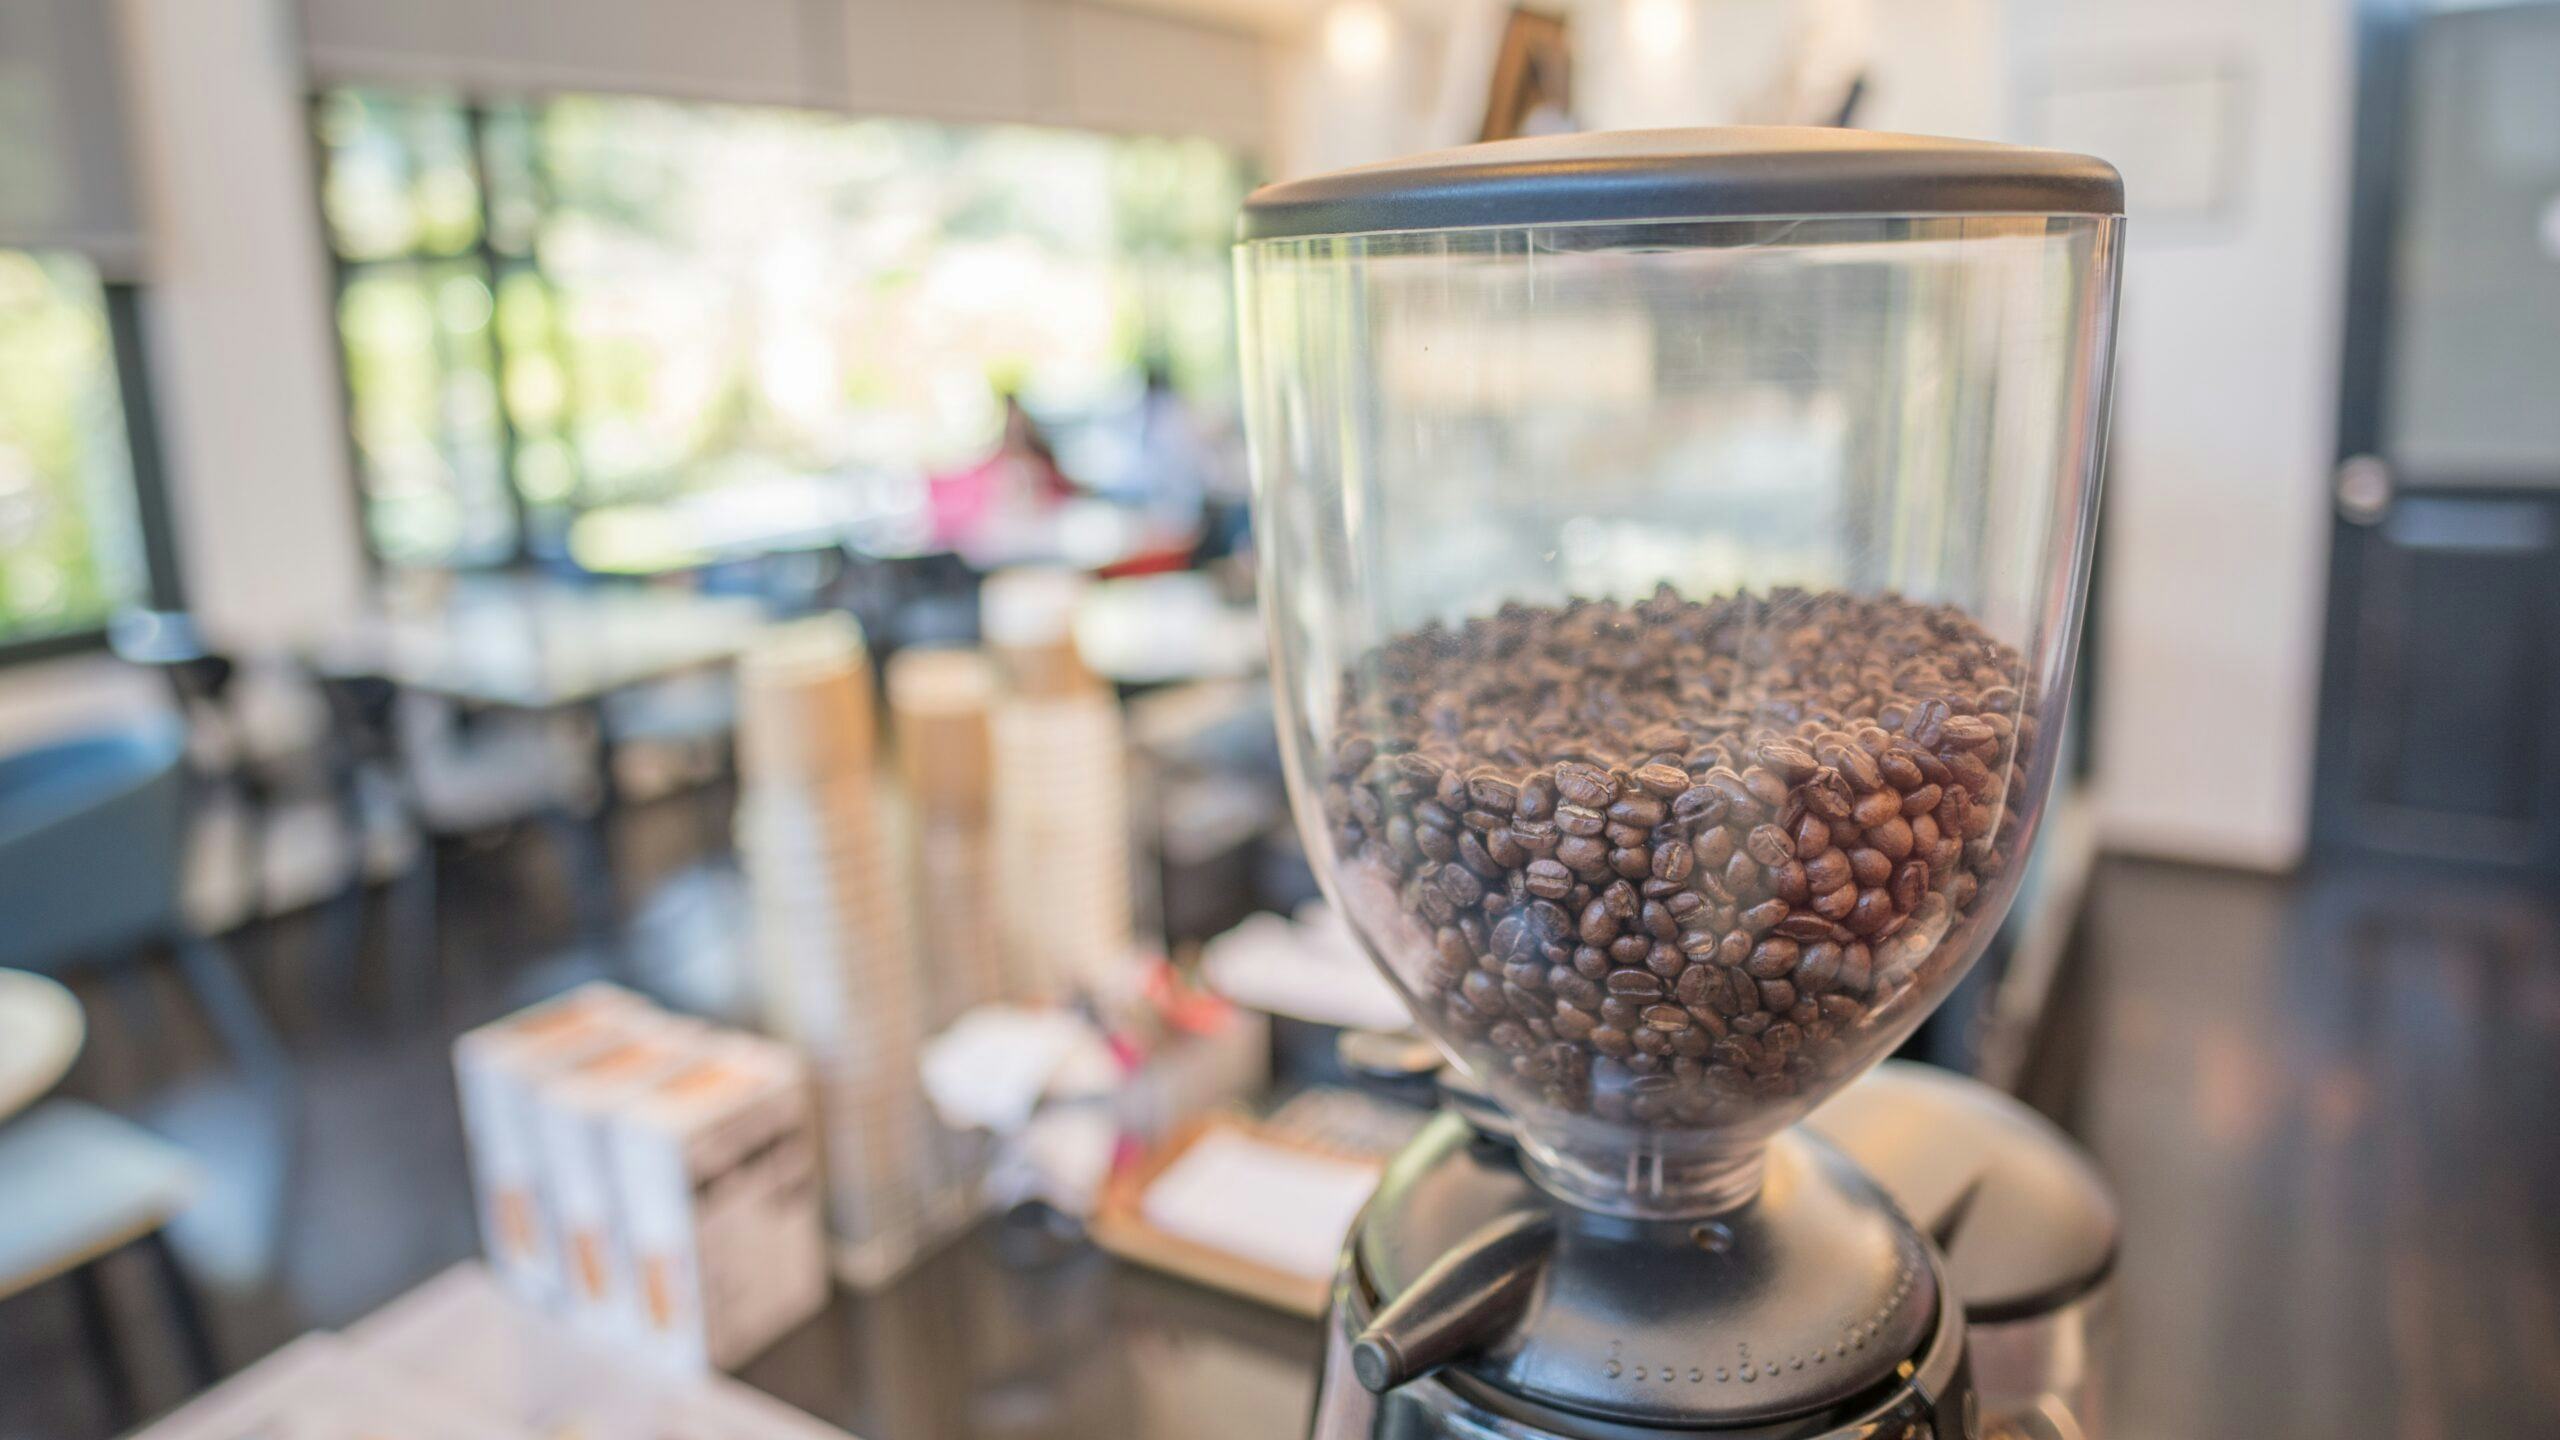 Behoud de smaak van je koffie: dit moet je weten over het bewaren van koffiebonen